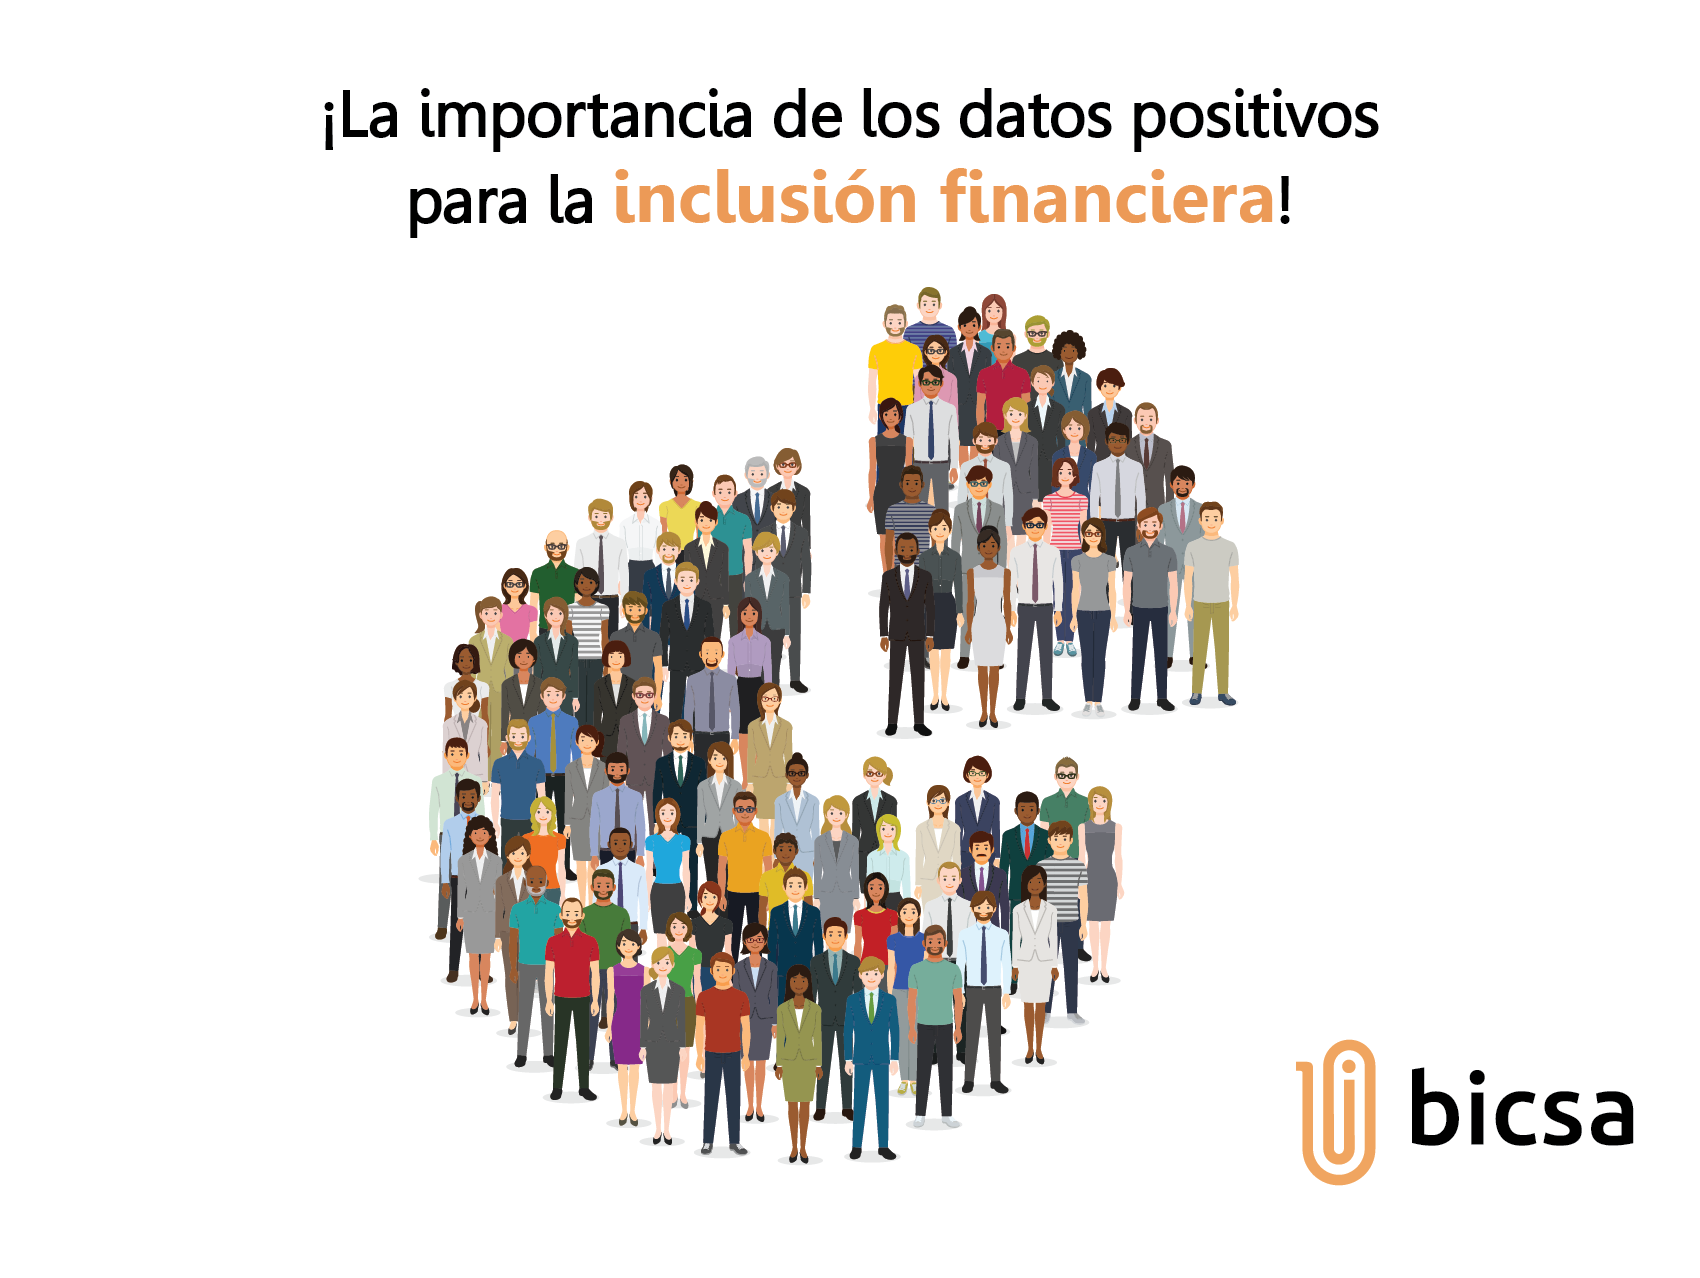 La importancia de los datos positivos para la inclusión financiera